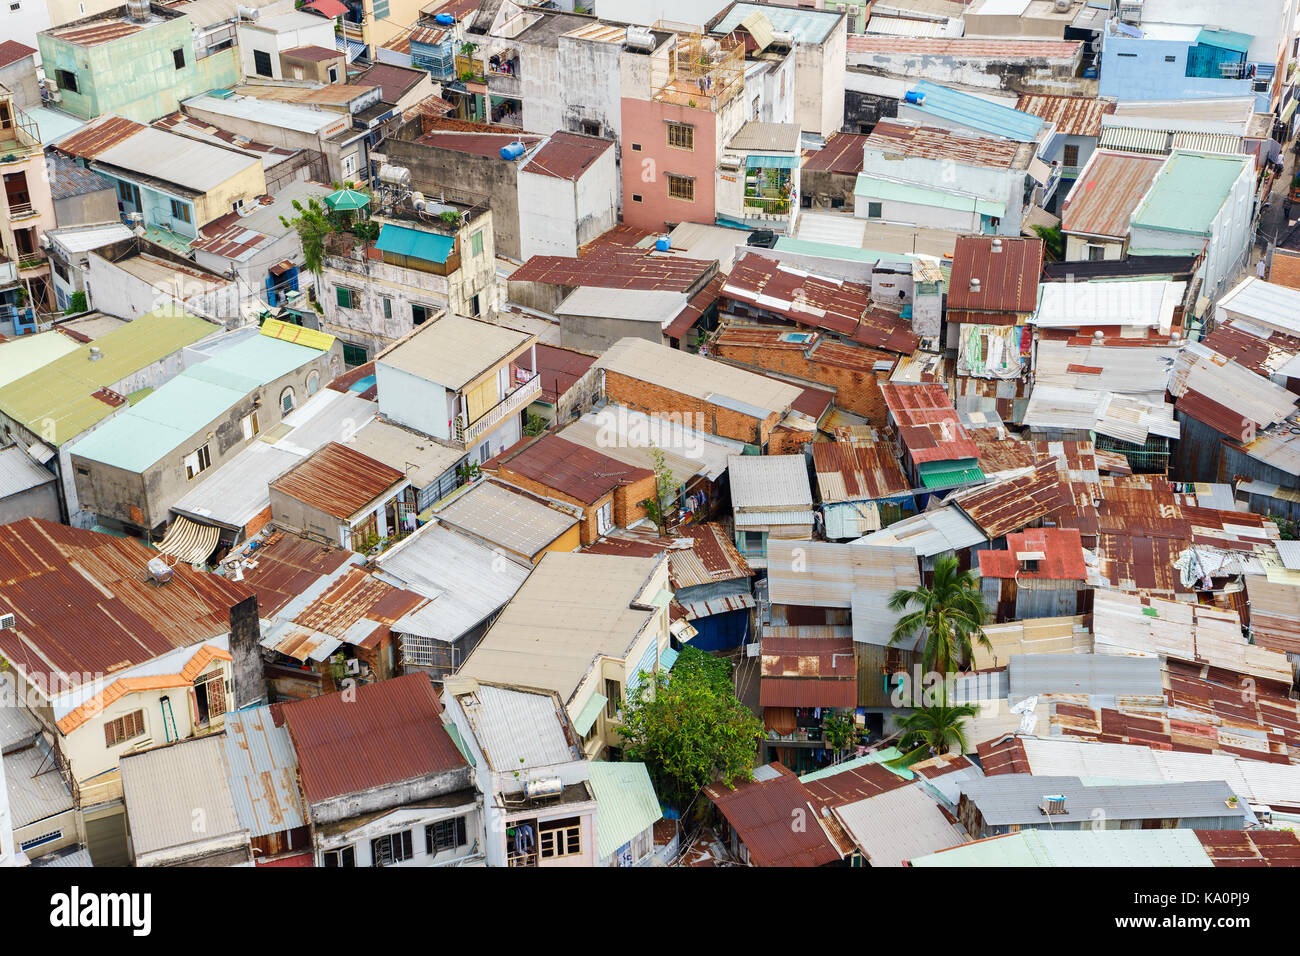 Des bidonvilles colorés des maisons à Ho chi minh ville (vue de dessus), Vietnam. Ho Chi Minh Ville (Saigon) aka est la plus grande ville et centre économique au Vietnam Banque D'Images